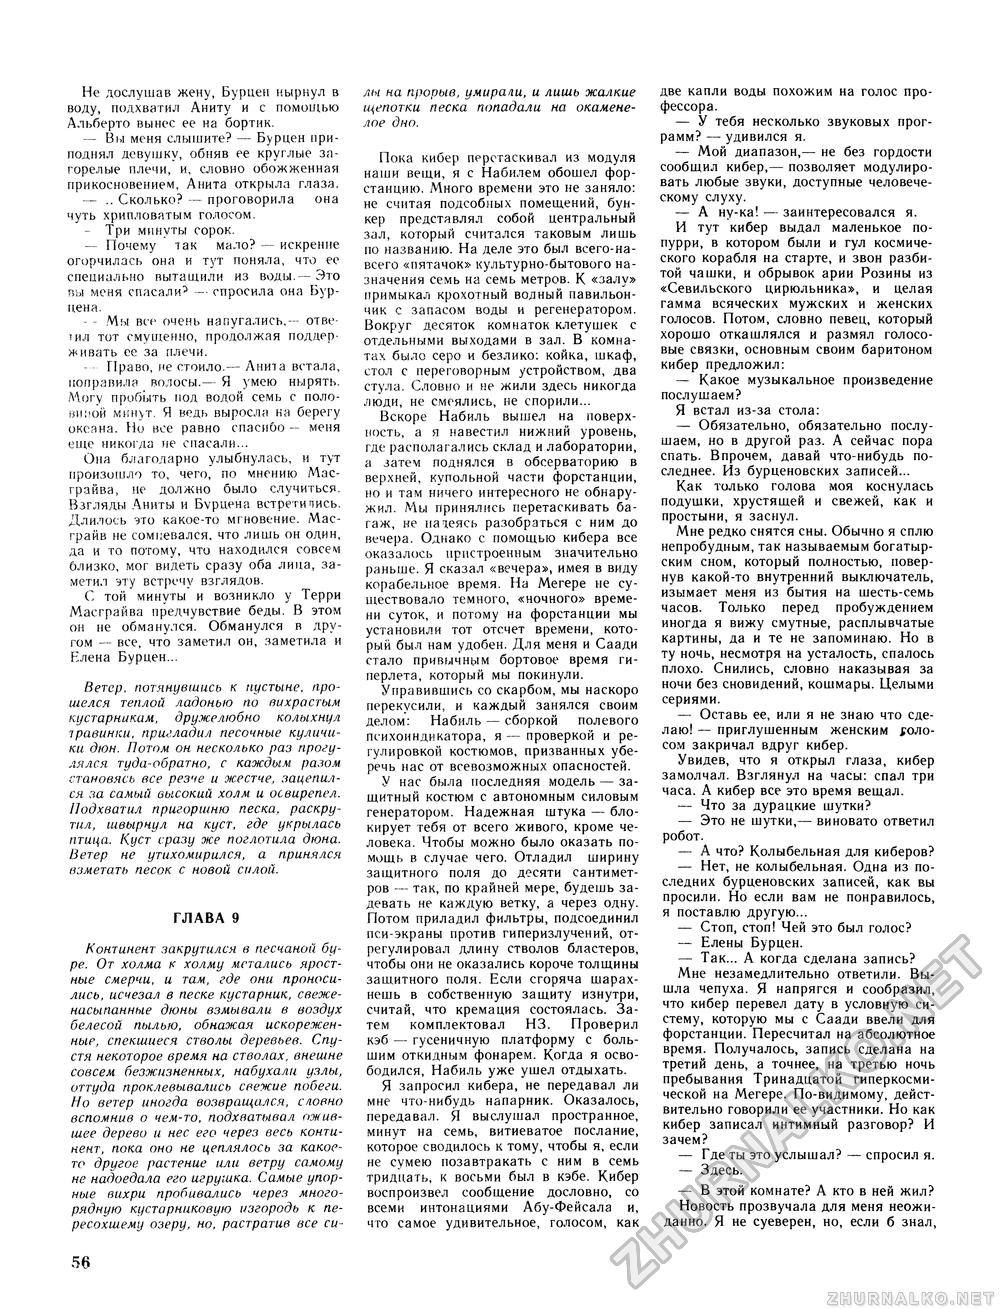 Вокруг света 1985-02, страница 58